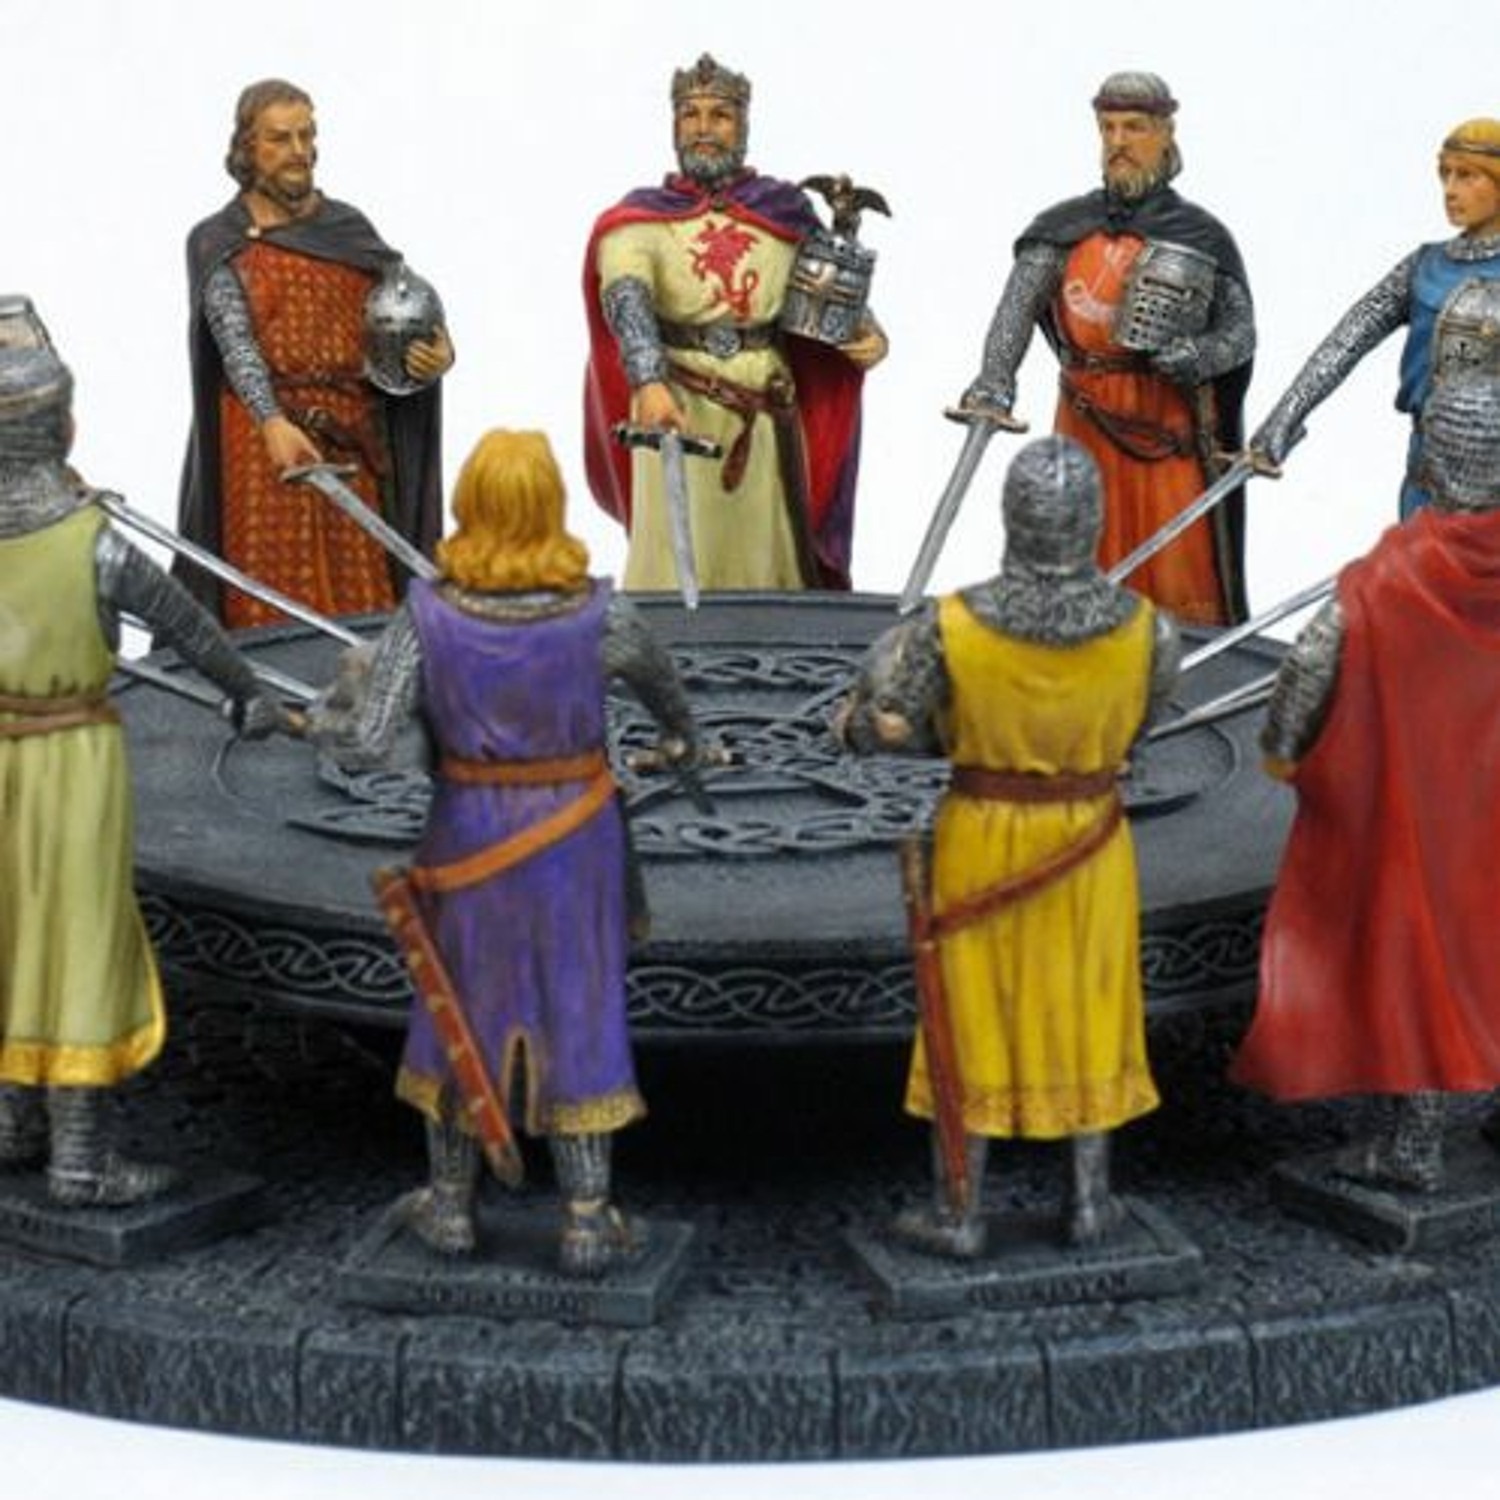 Король Артур и Рыцари круглого стола